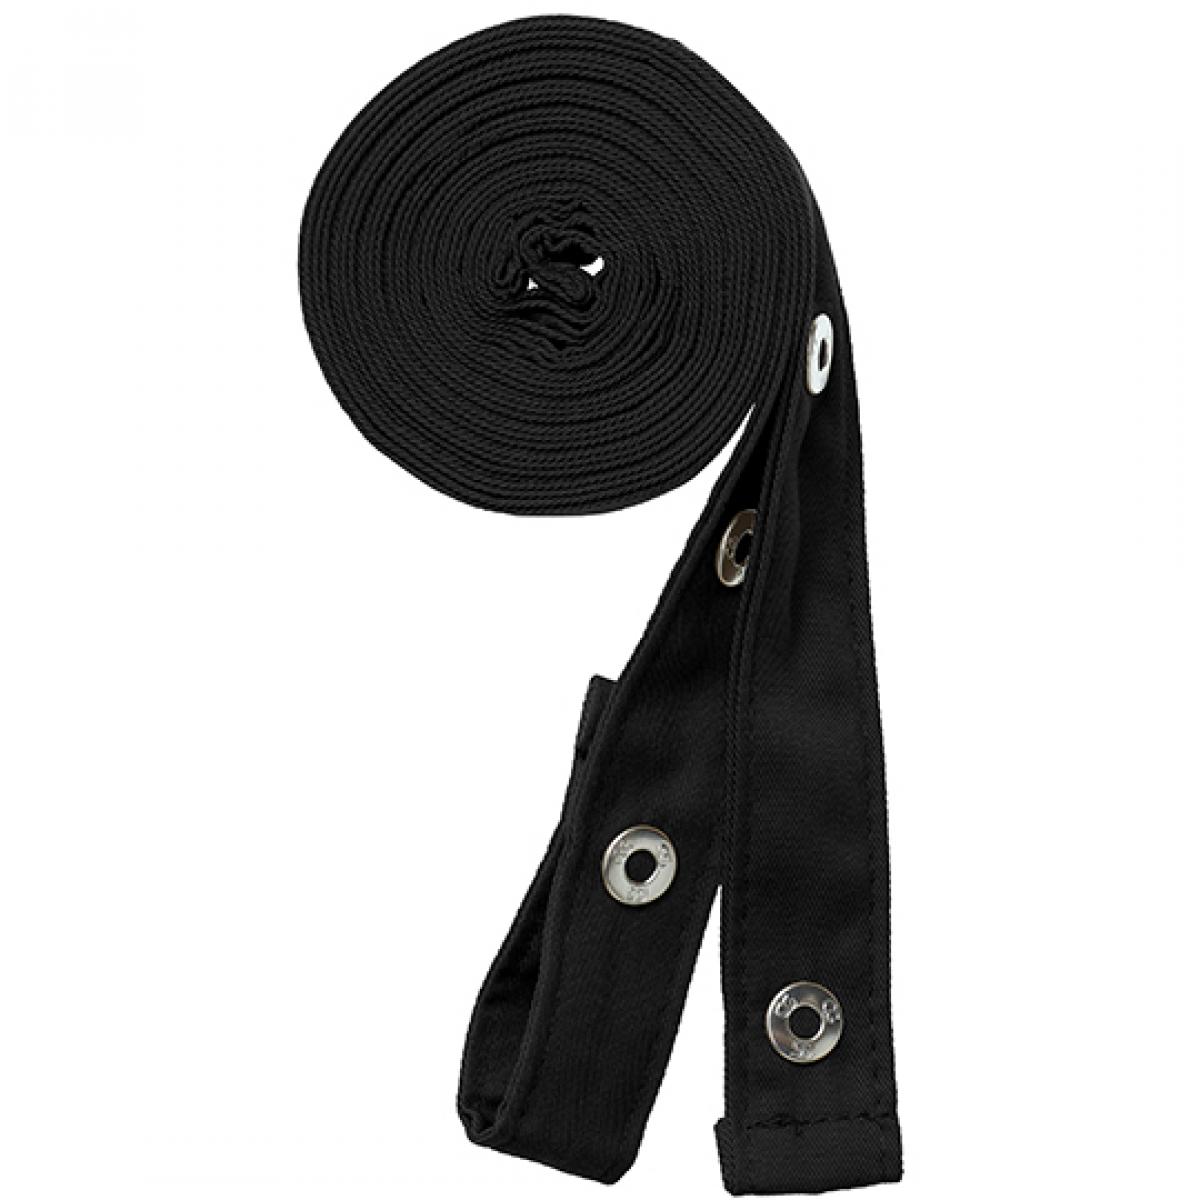 Hersteller: CG Workwear Herstellernummer: 42141 Artikelbezeichnung: Potenza X Classic Strap Set je 230 cm lang und 2,5 cm breit Farbe: Black